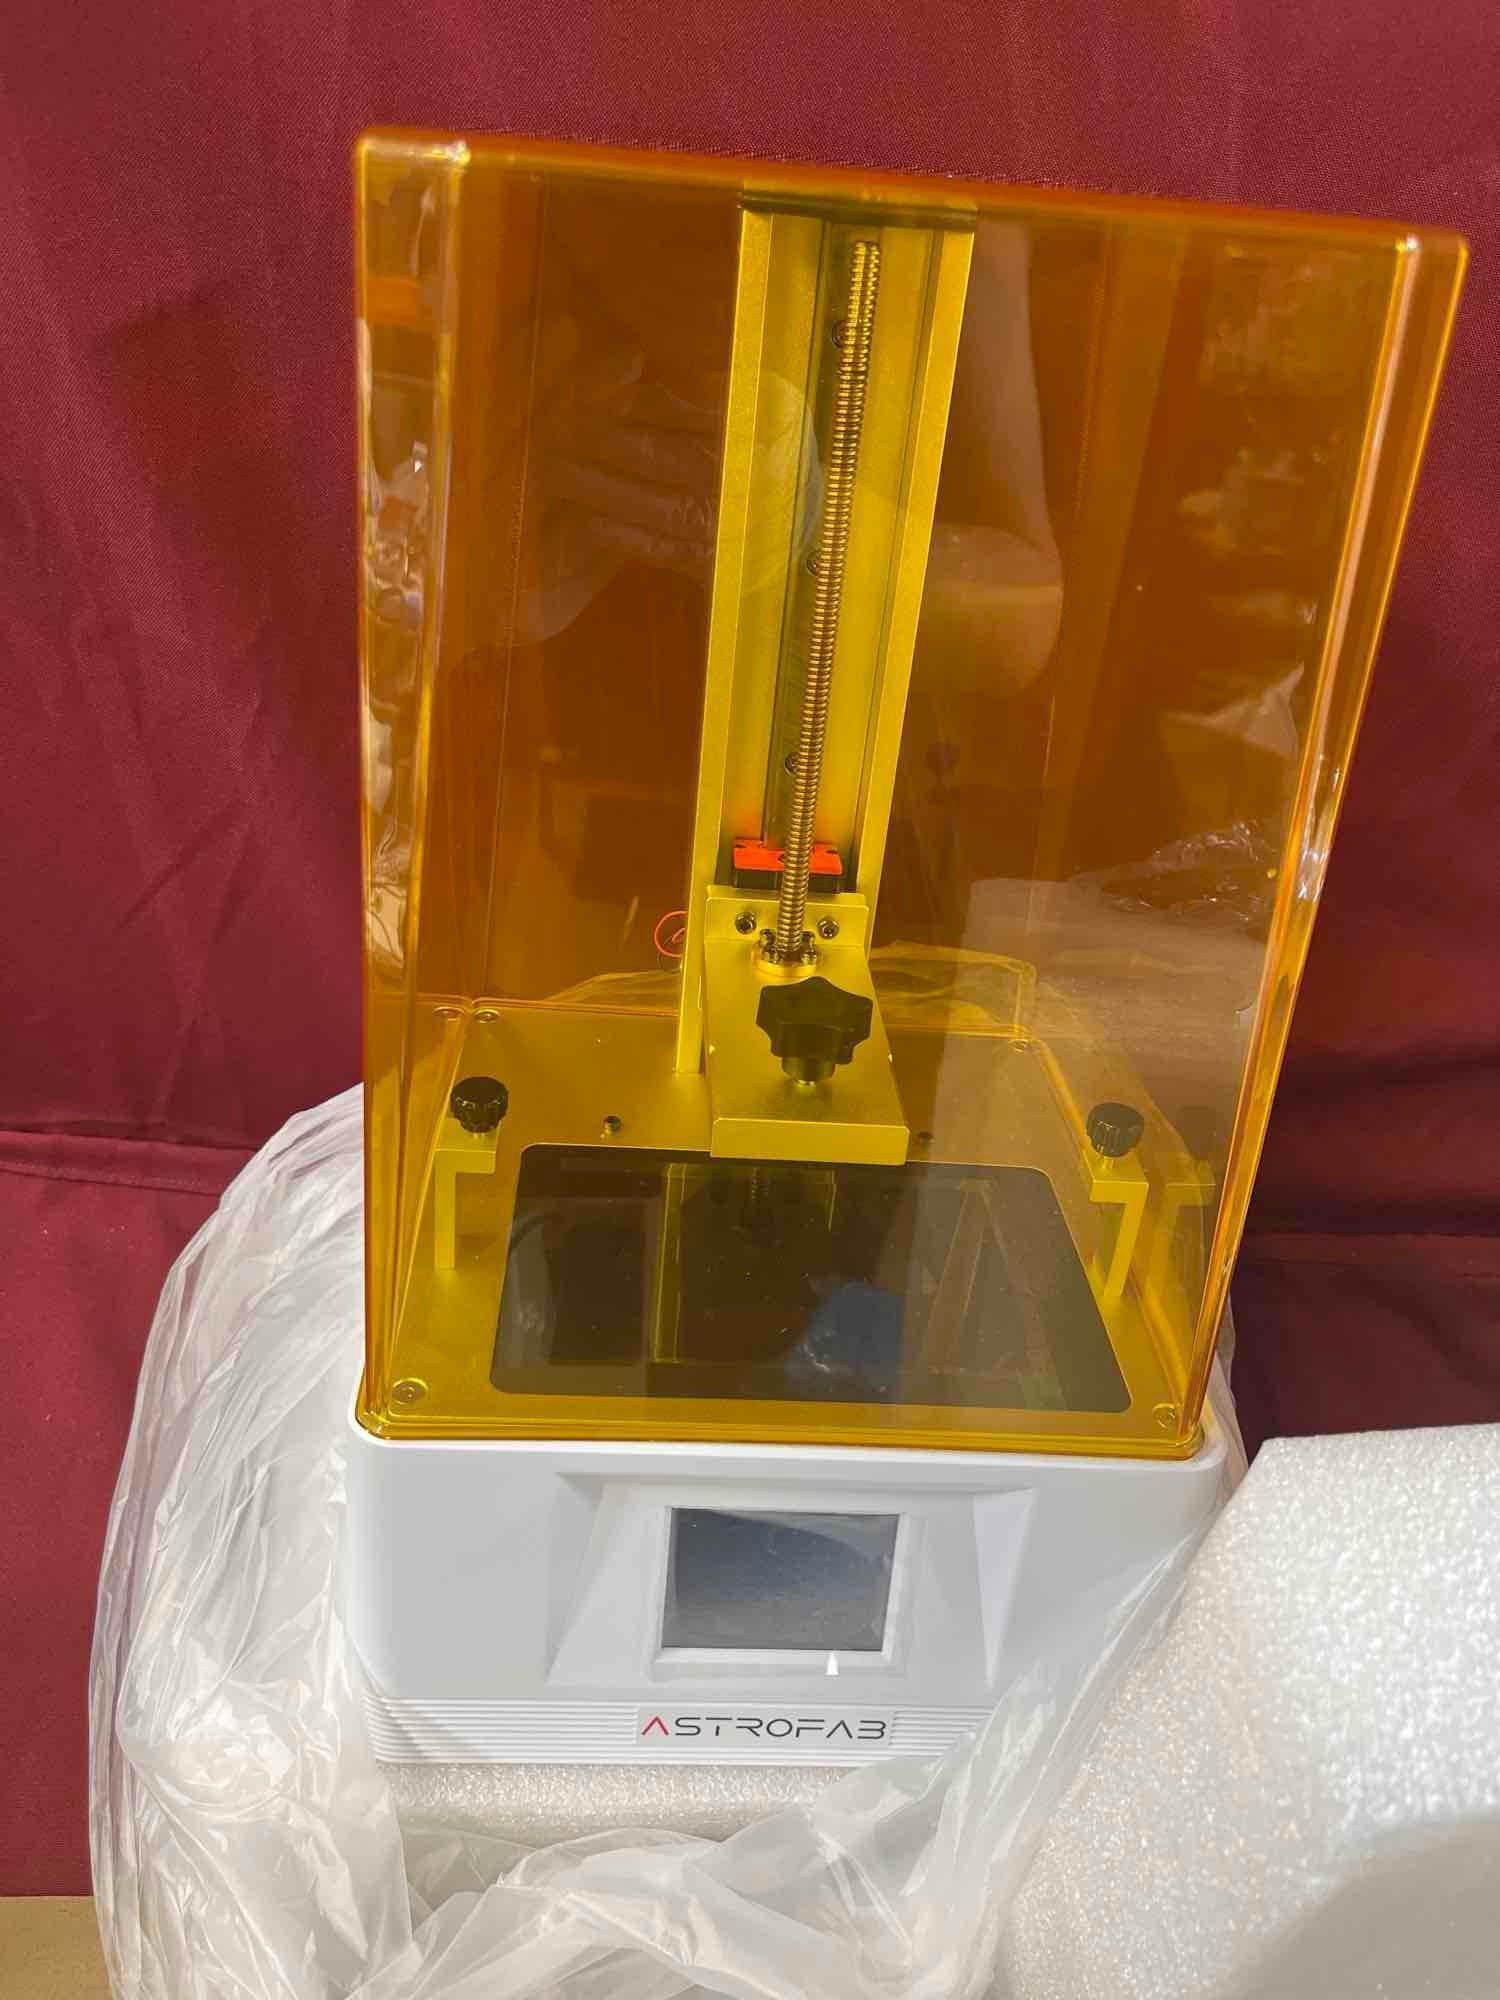 Astrofab photon mono, resin 3D printer